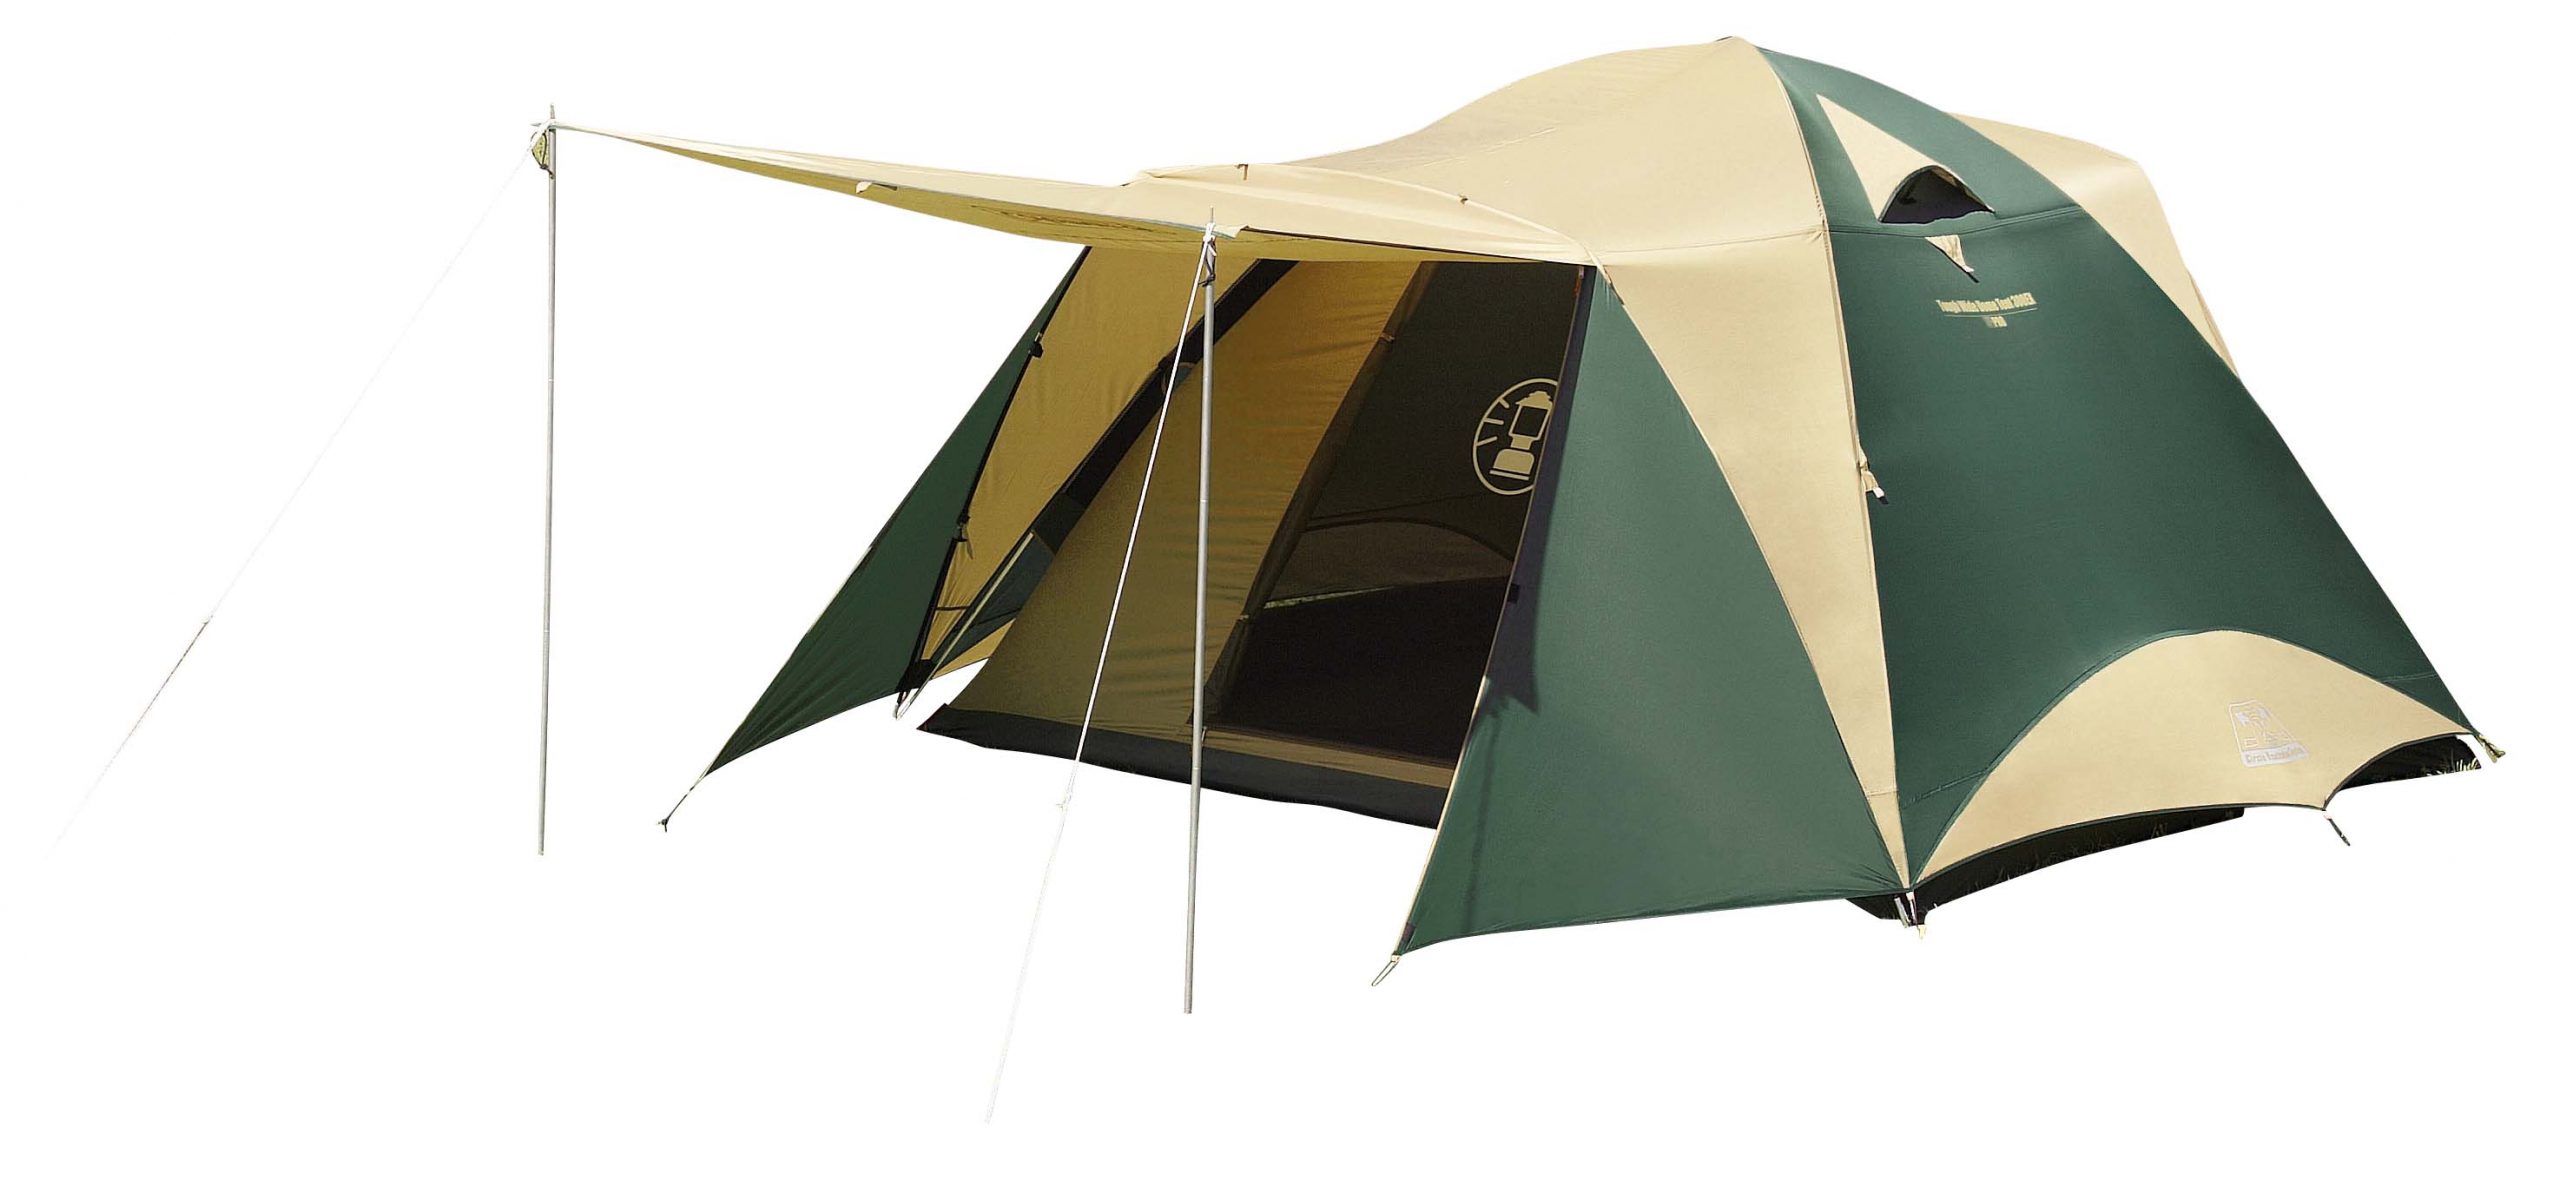 スチールペグ タープ キャンプ アウトドア30cm8本テント用品